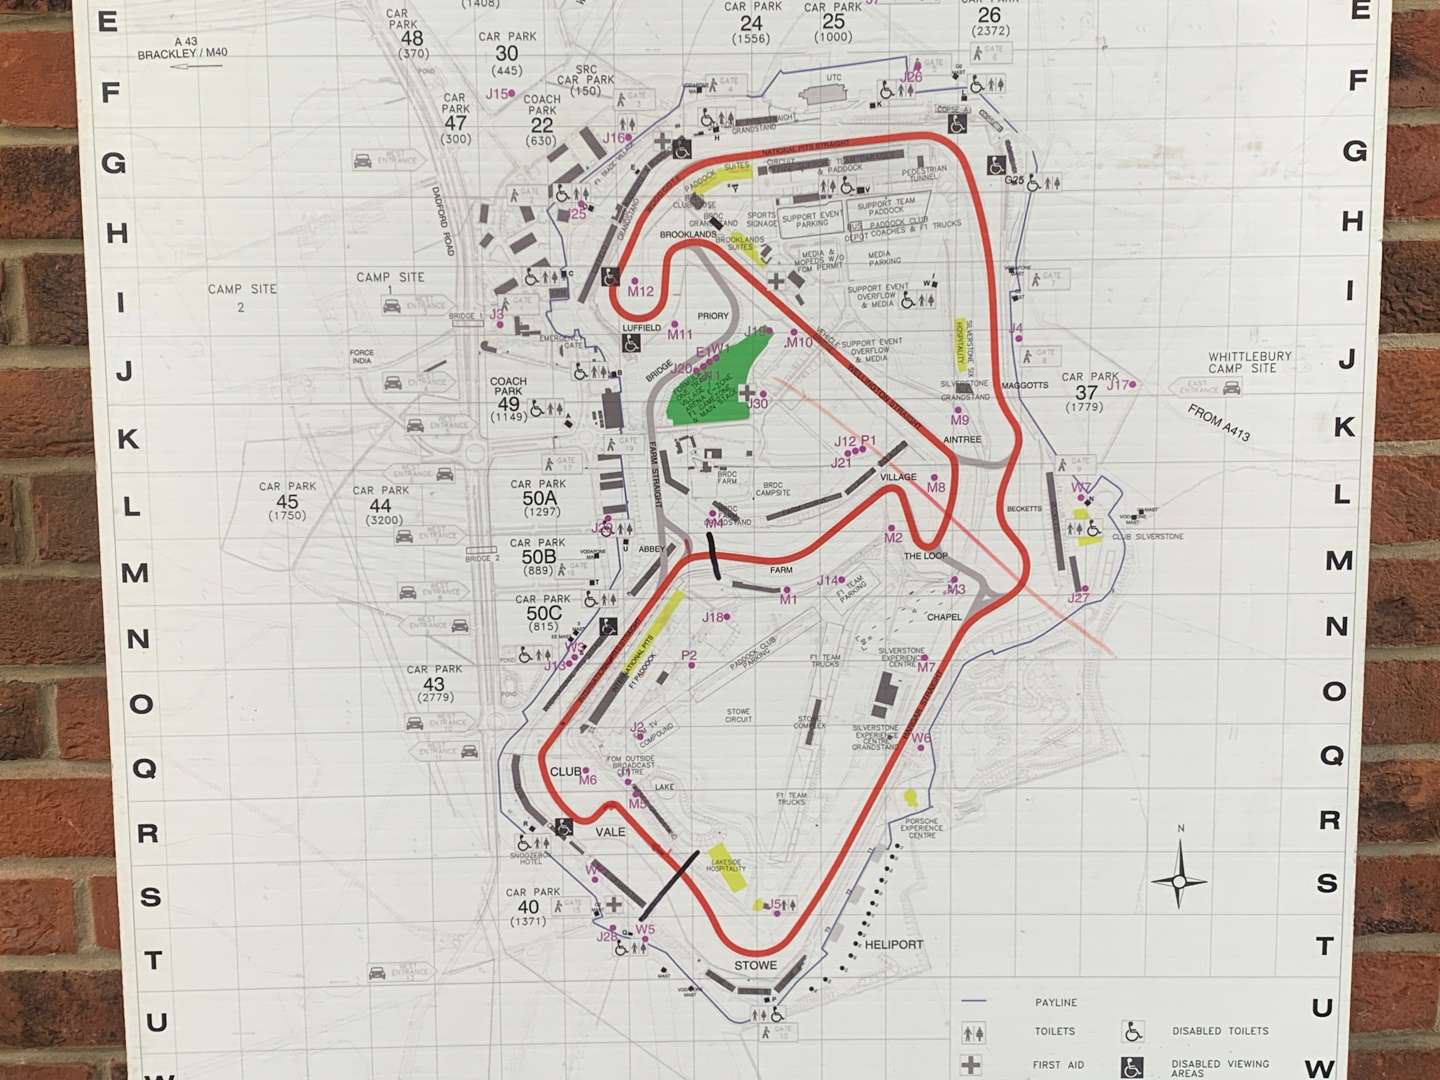 <p>Silverstone Gridded 2015 British GP Map&nbsp;</p>